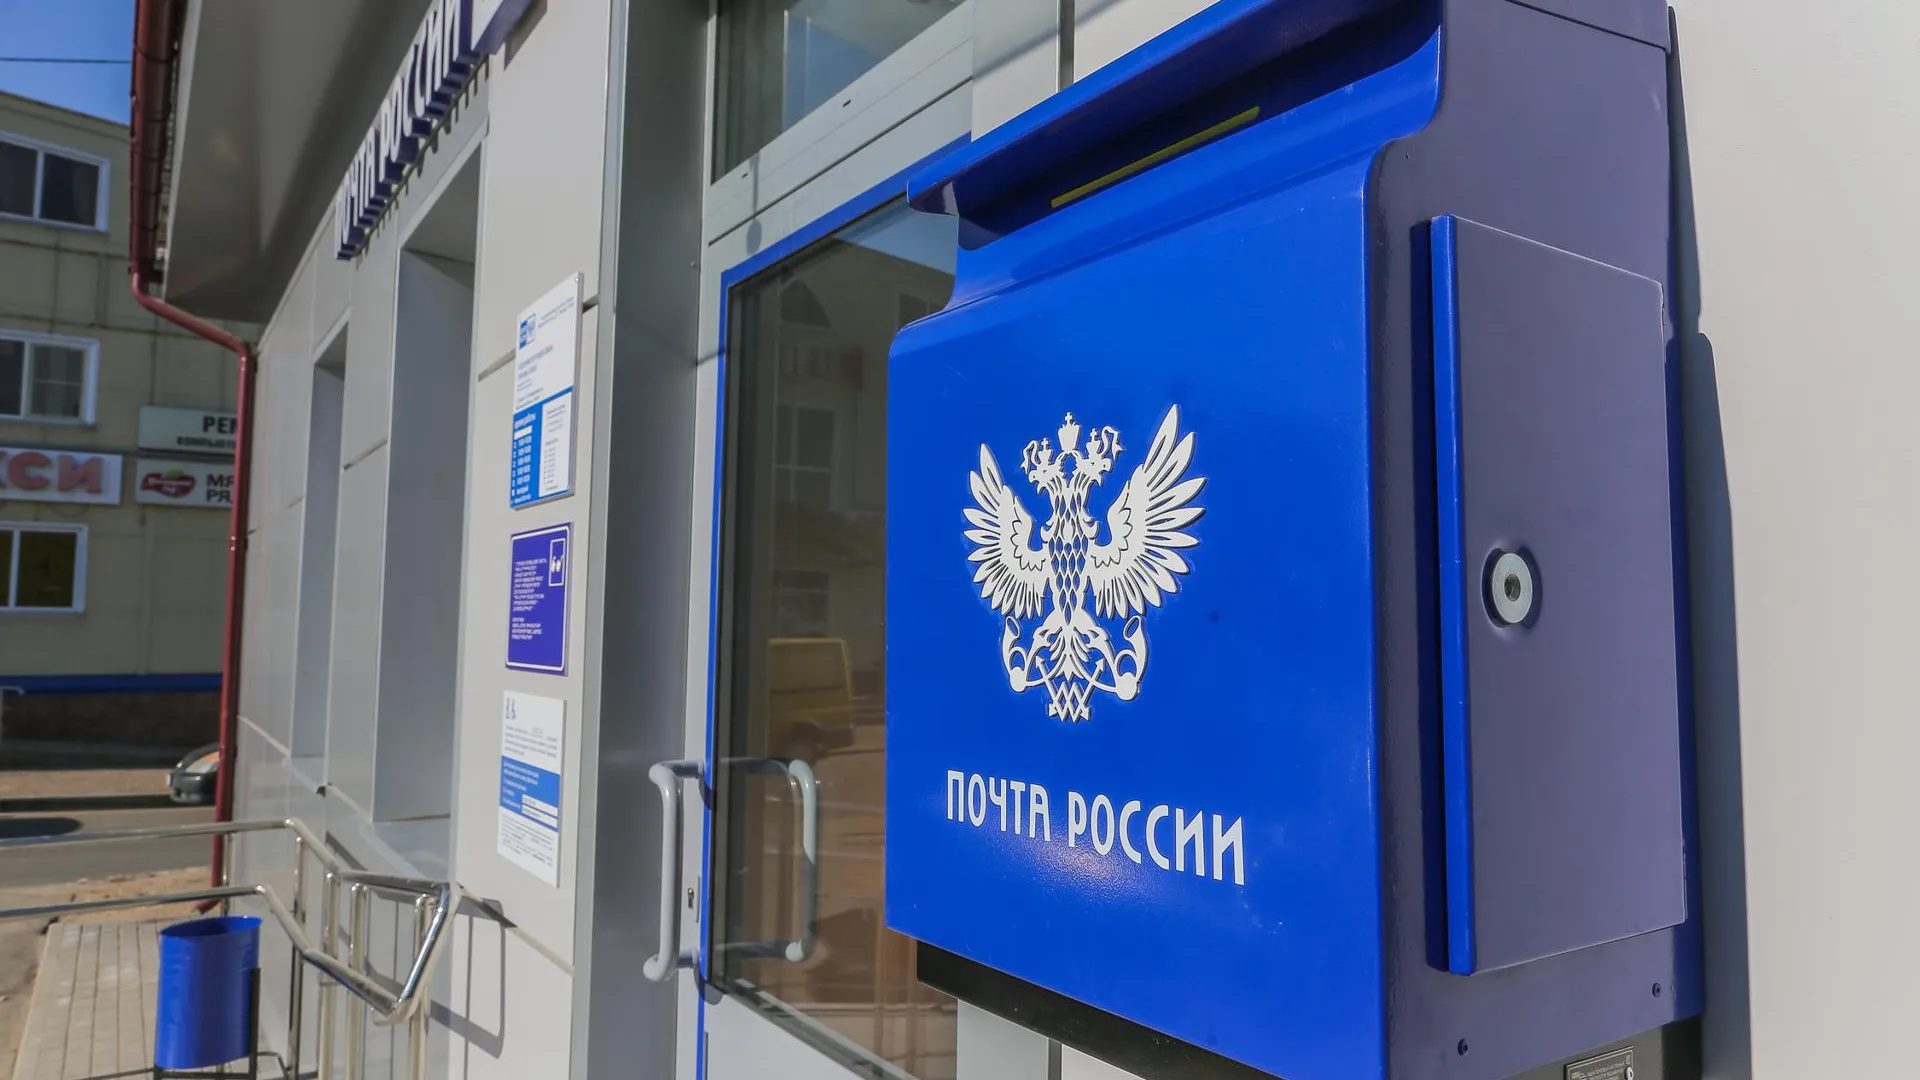 SHOT: посылка взорвалась при разгрузке в отделении «Почты России» в Москве